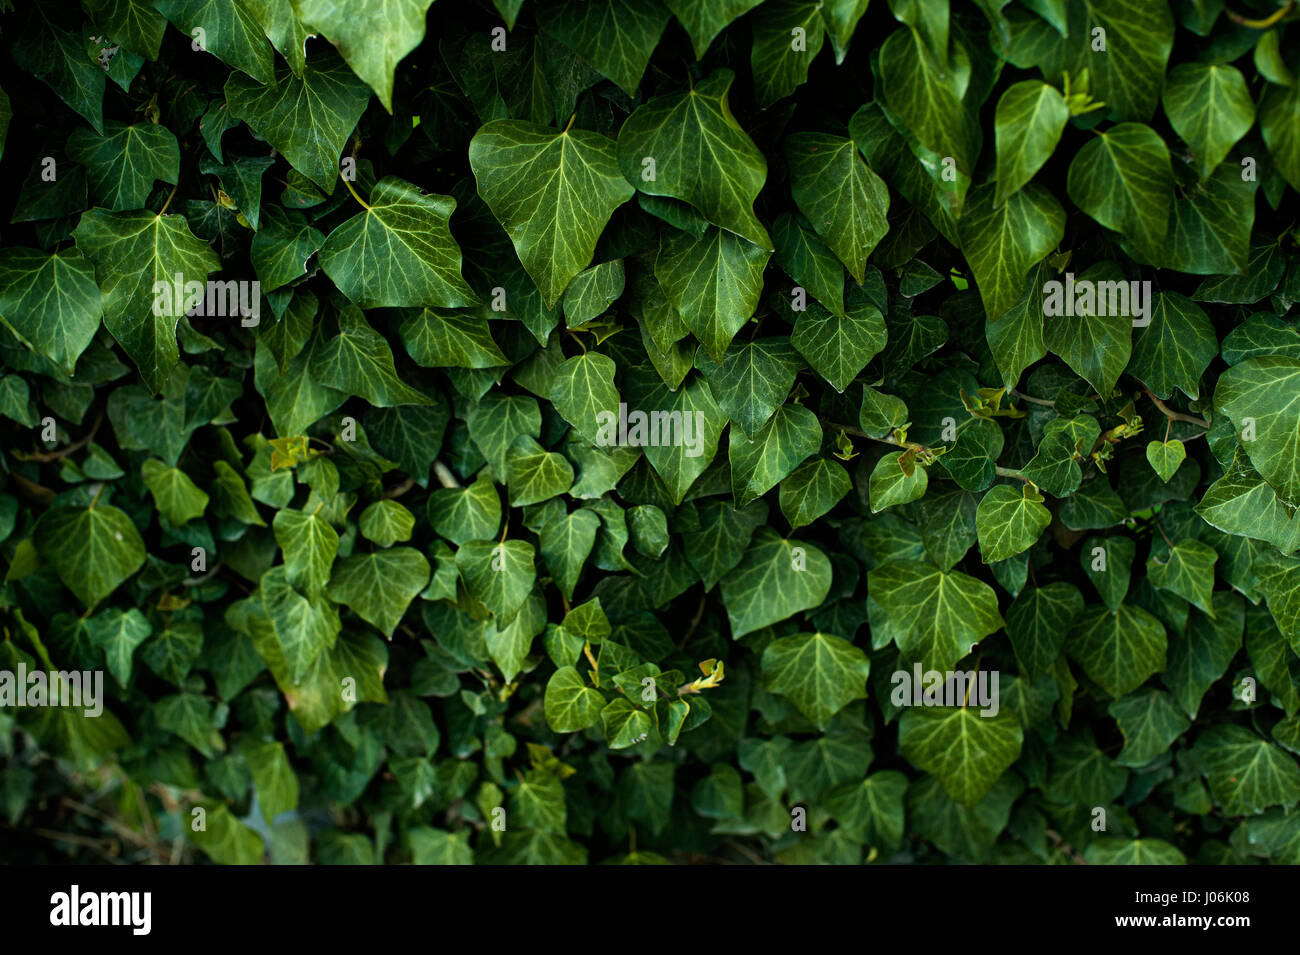 Follaje verde oscuro de una planta saludable con hojas dentadas relucientes. Low Key, fondo horizontal o banner. Foto de stock